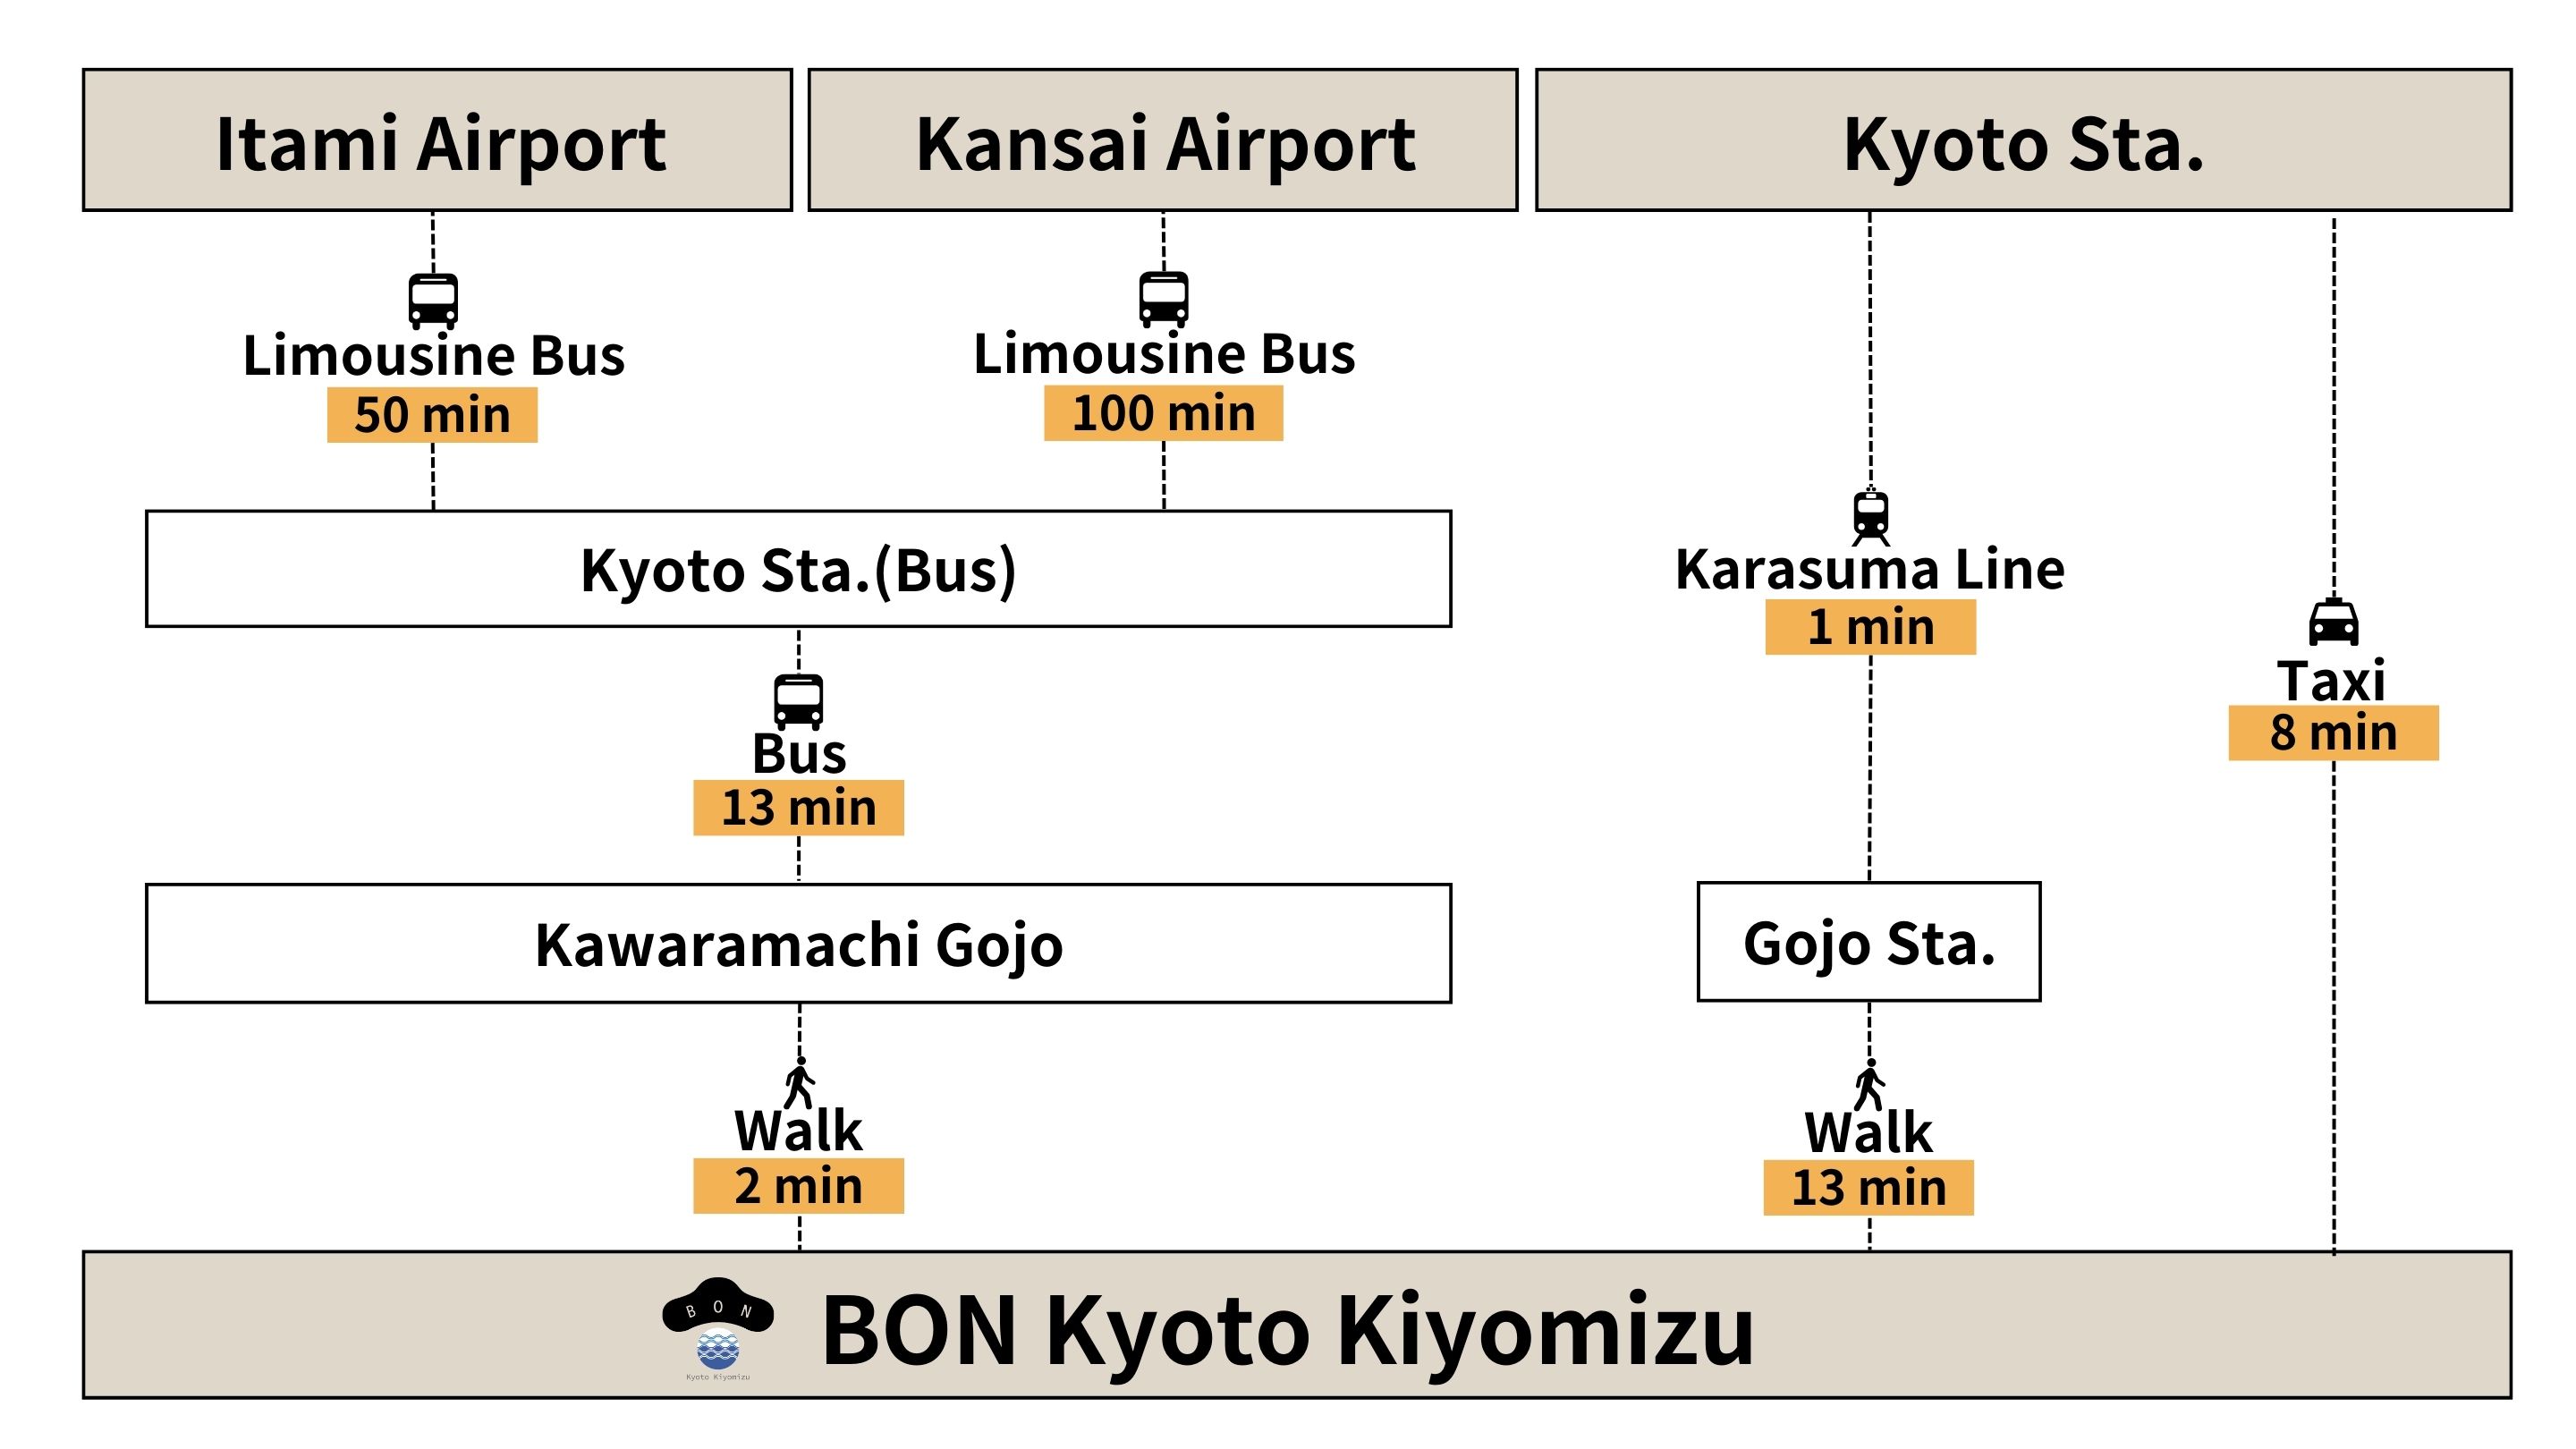 Bon Kyoto Kiyomizu